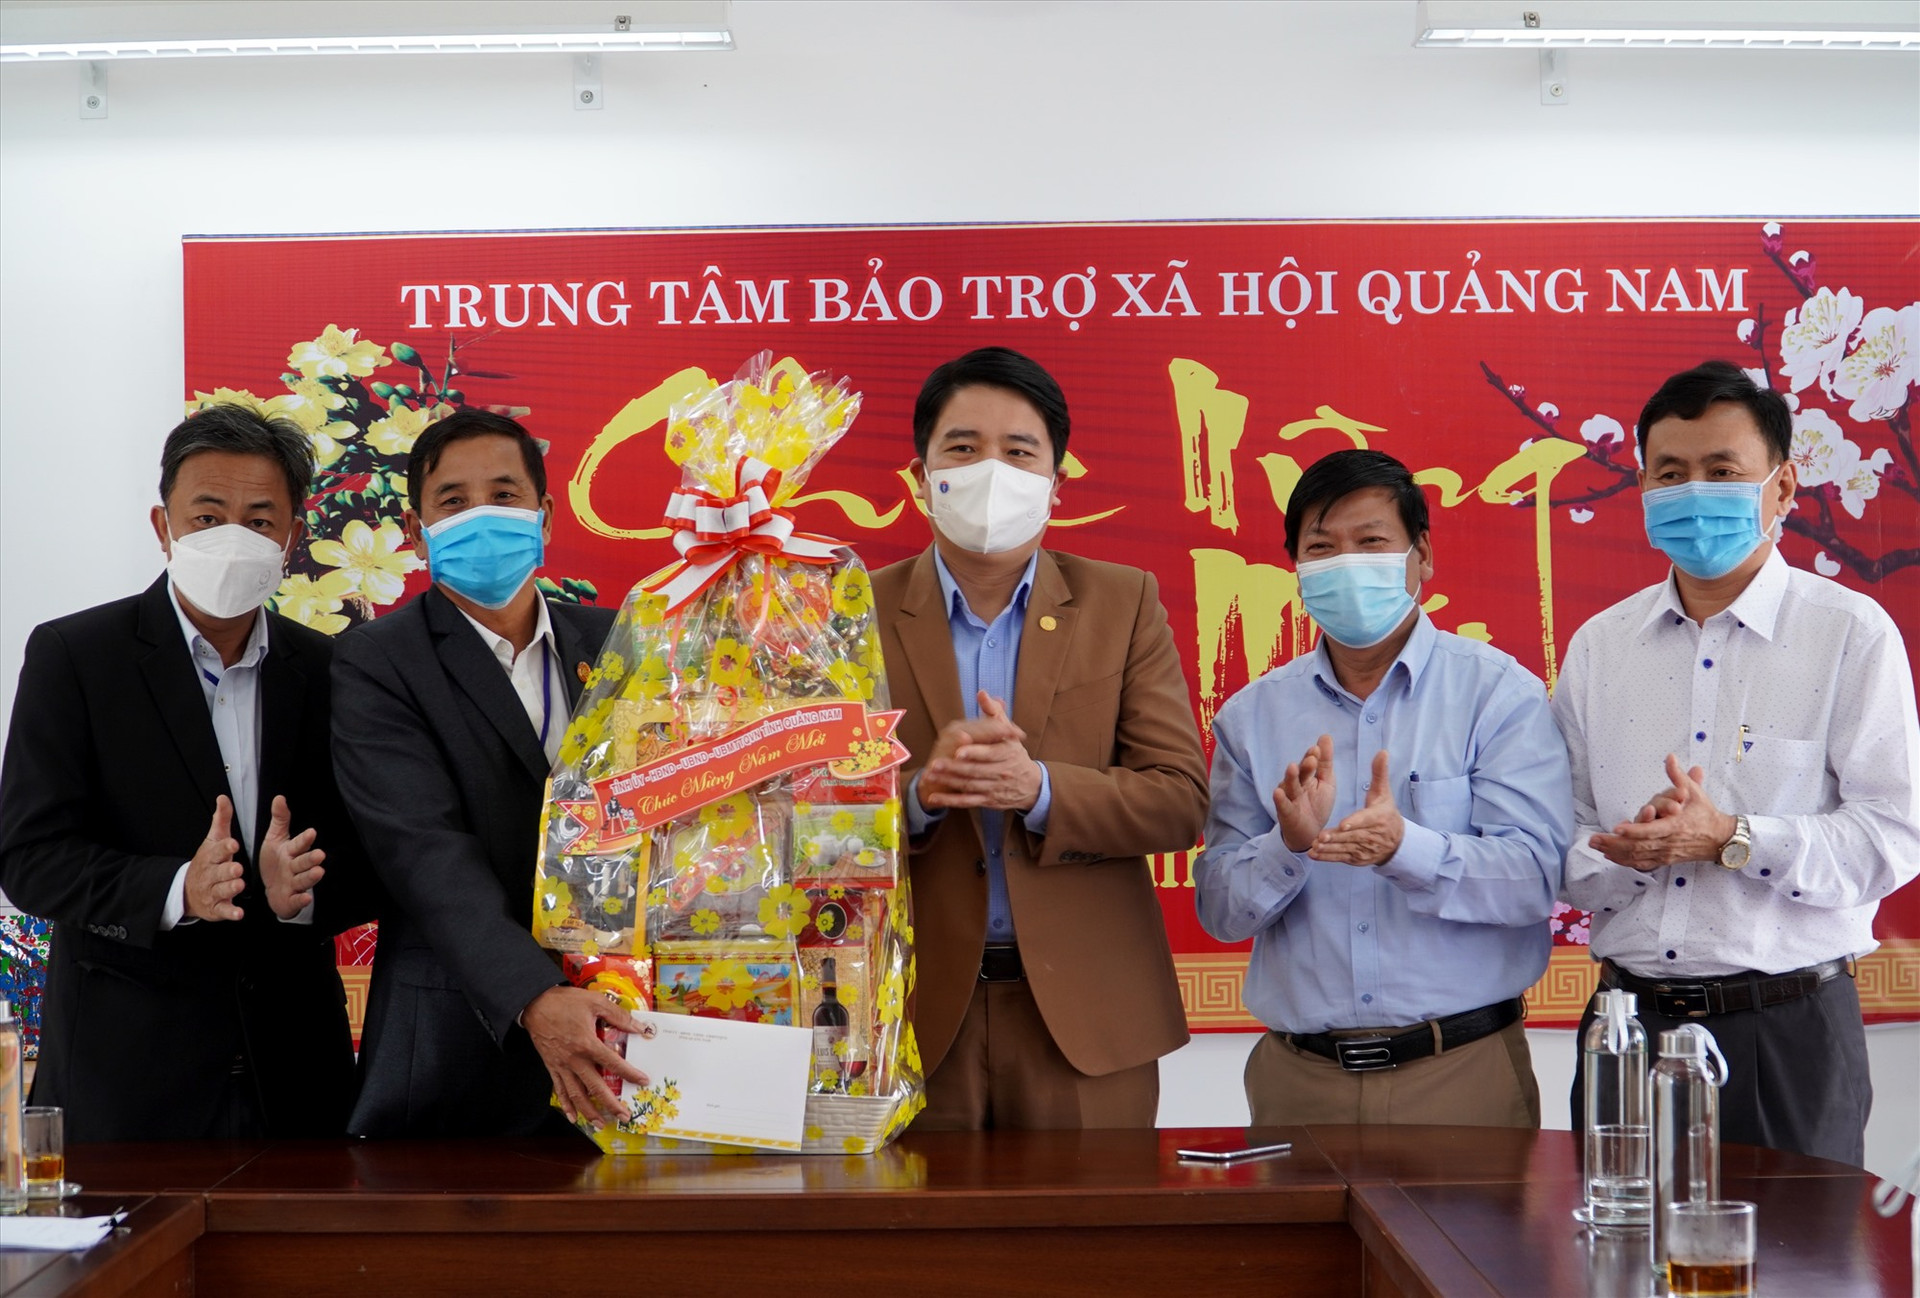 Phó Chủ tịch Trần Văn Tân trao quà tết tại Trung tâm Bảo trợ xã hội Quảng Nam. Ảnh: HỒ QUÂN